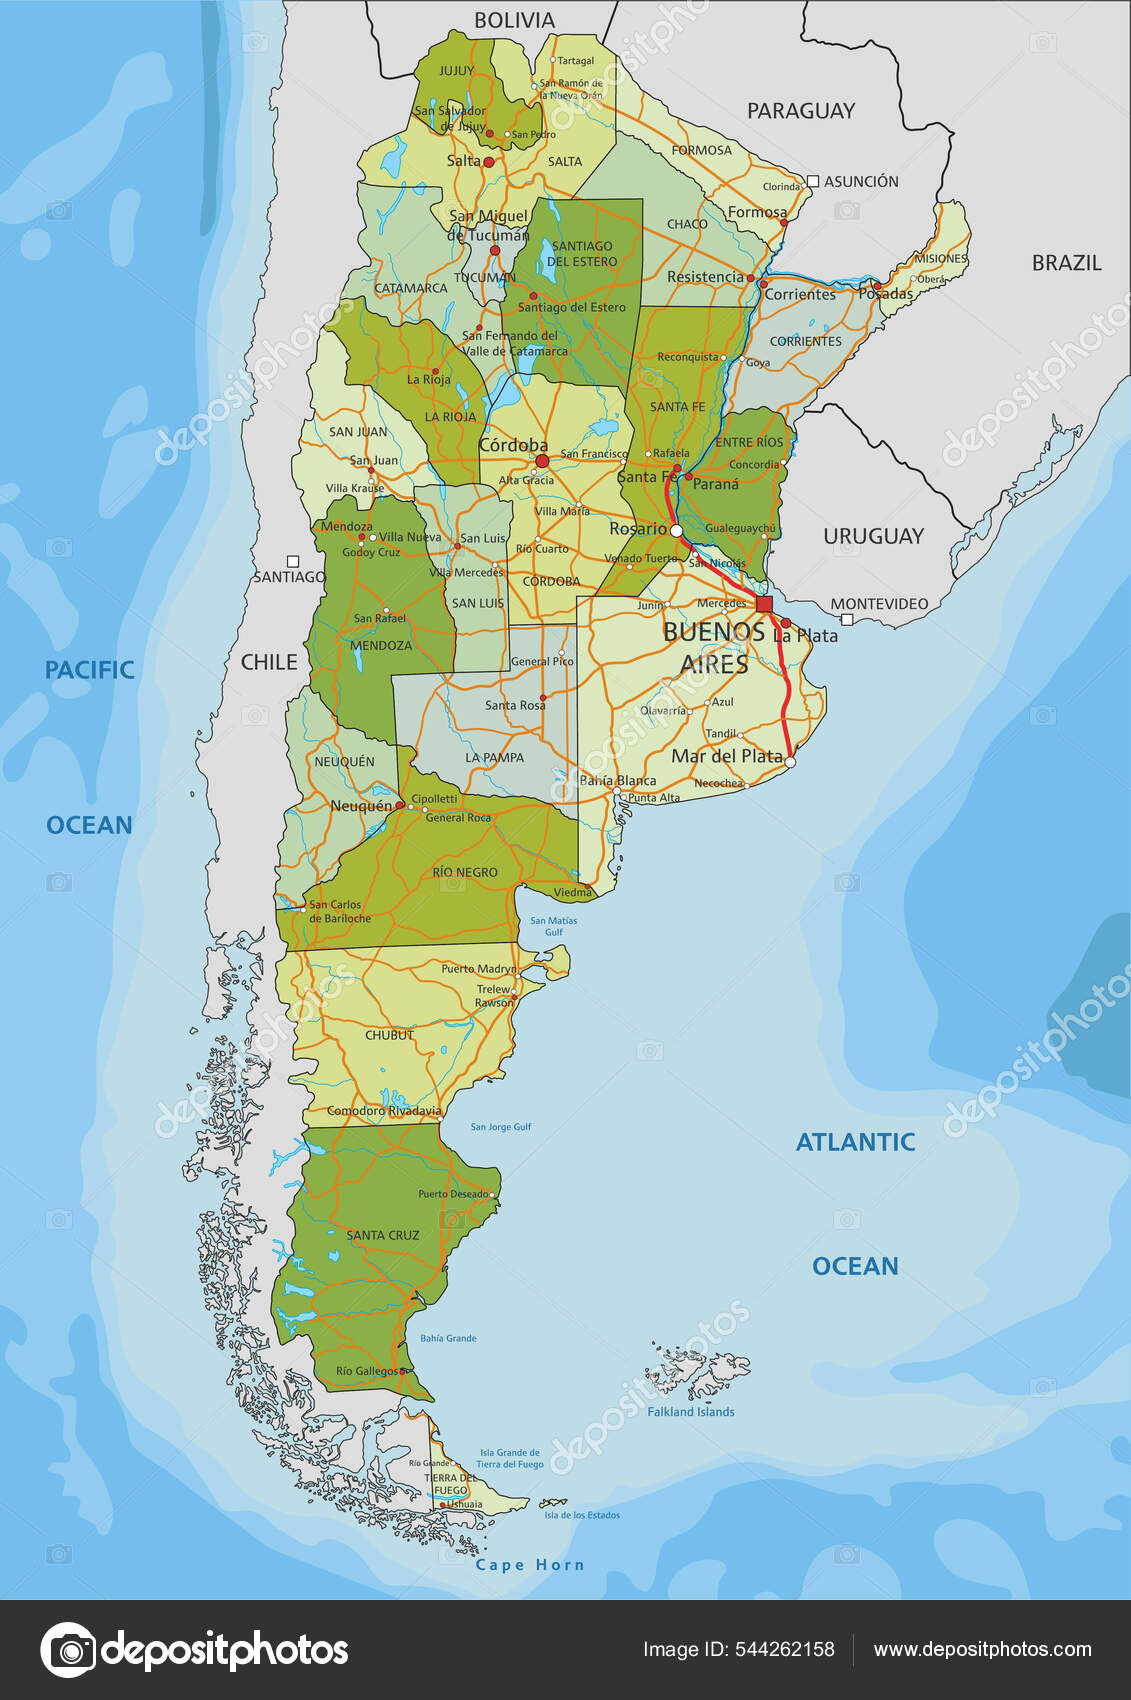 Vetores de Mapa Físico Detalhado Elevado De Portugal e mais